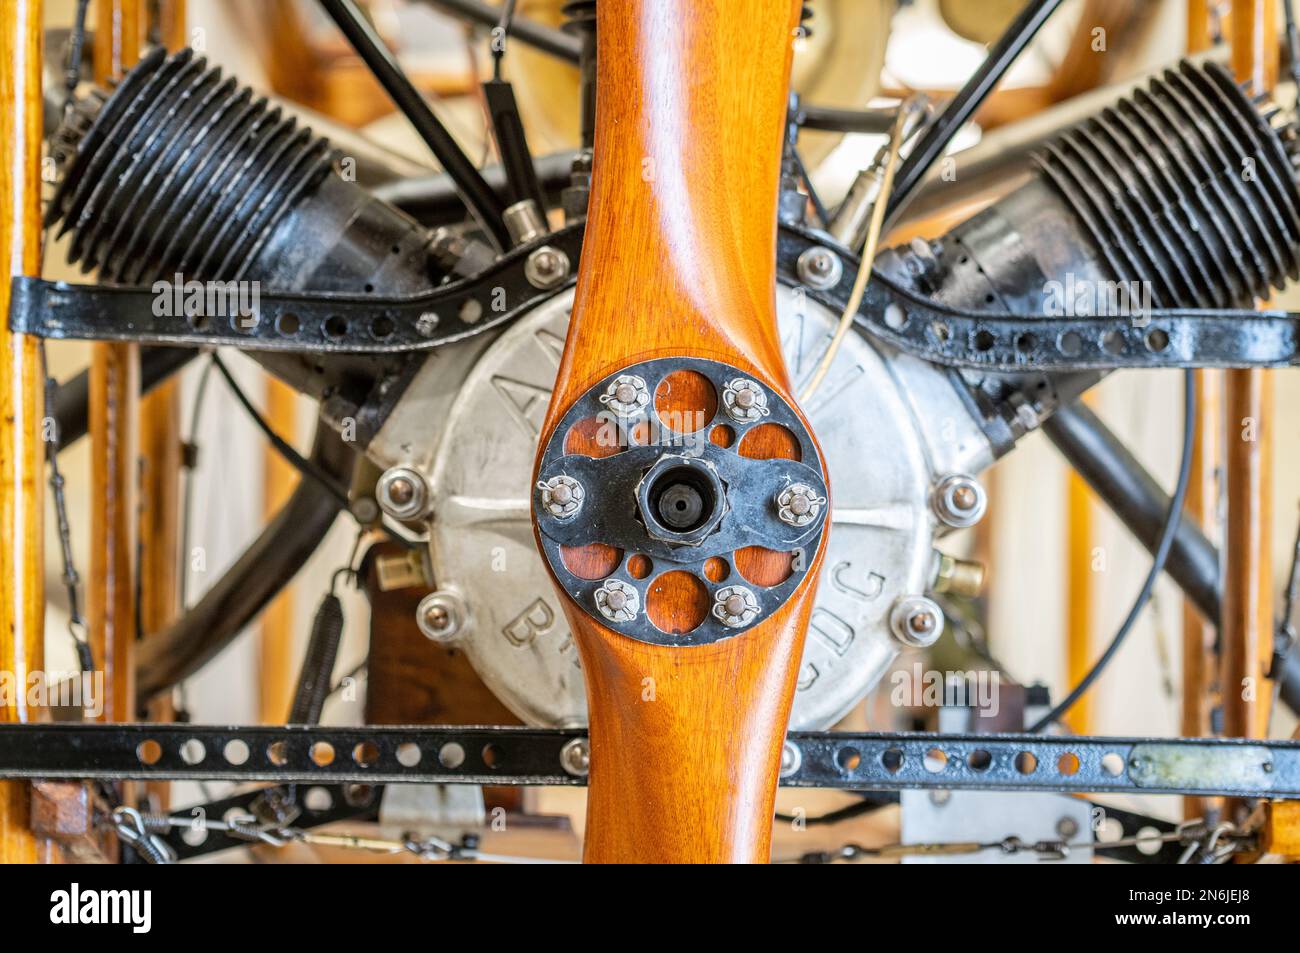 La collection Shuttleworth , un musée aéronautique et automobile en activité à l'aérodrome de Old Warden 1909 Bleriot XI avec moteur original, le monde Banque D'Images